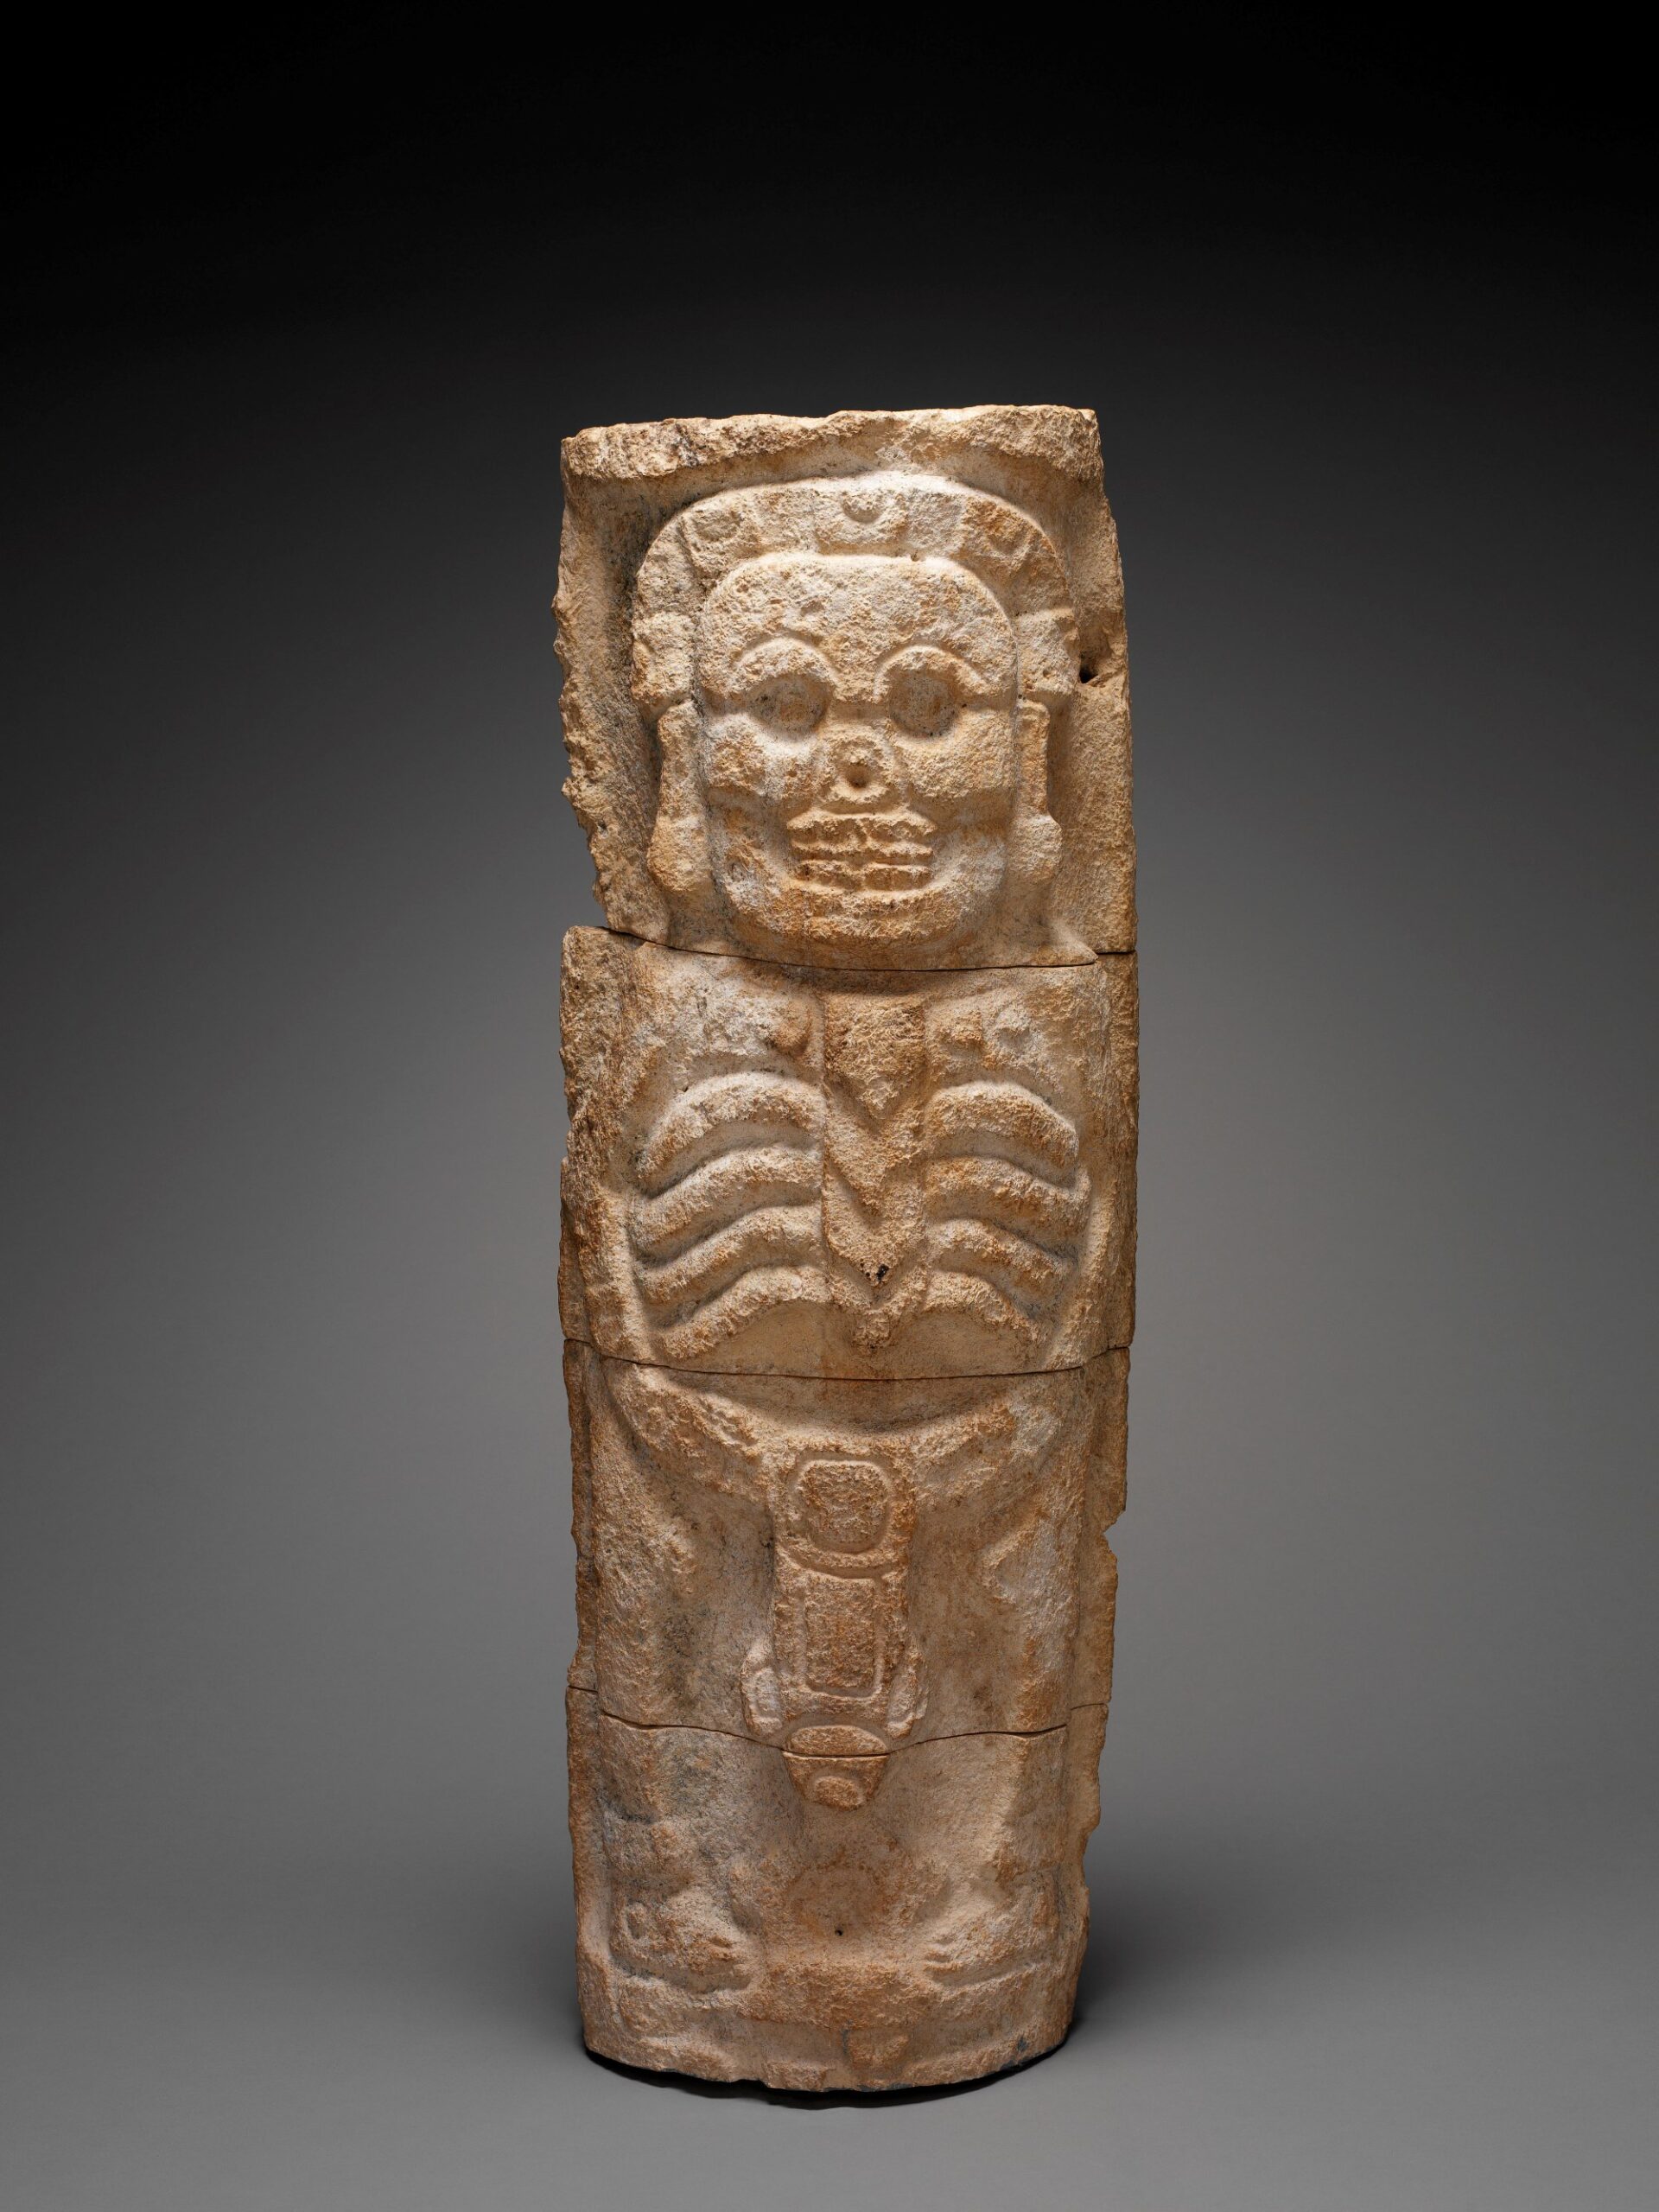 Sculpture représentant Ah-Puch, dieu de la mort, Mexique, 800-1000. © Musée du quai Branly - Jacques Chirac, Dist. RMN-Grand Palais, Patrick Gries, Bruno Descoings, SP